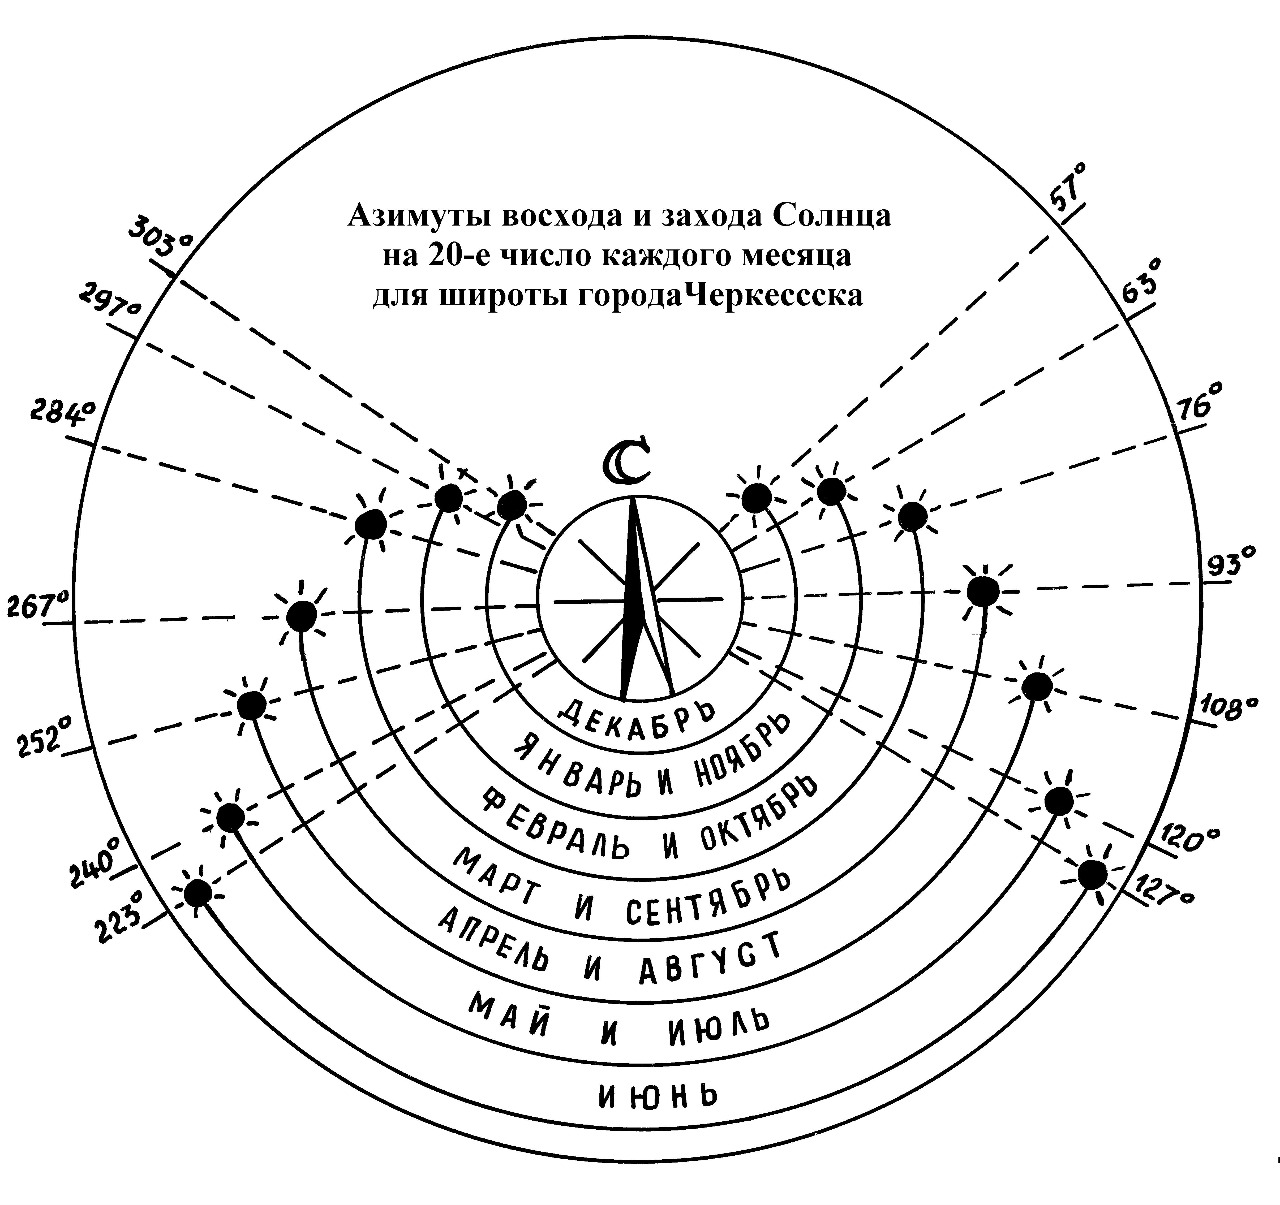 Азимут в навигации 6 букв сканворд. Восход солнца схема. Азимуты точек восхода и захода. Азимут восхода и захода солнца. Карта захода солнца.